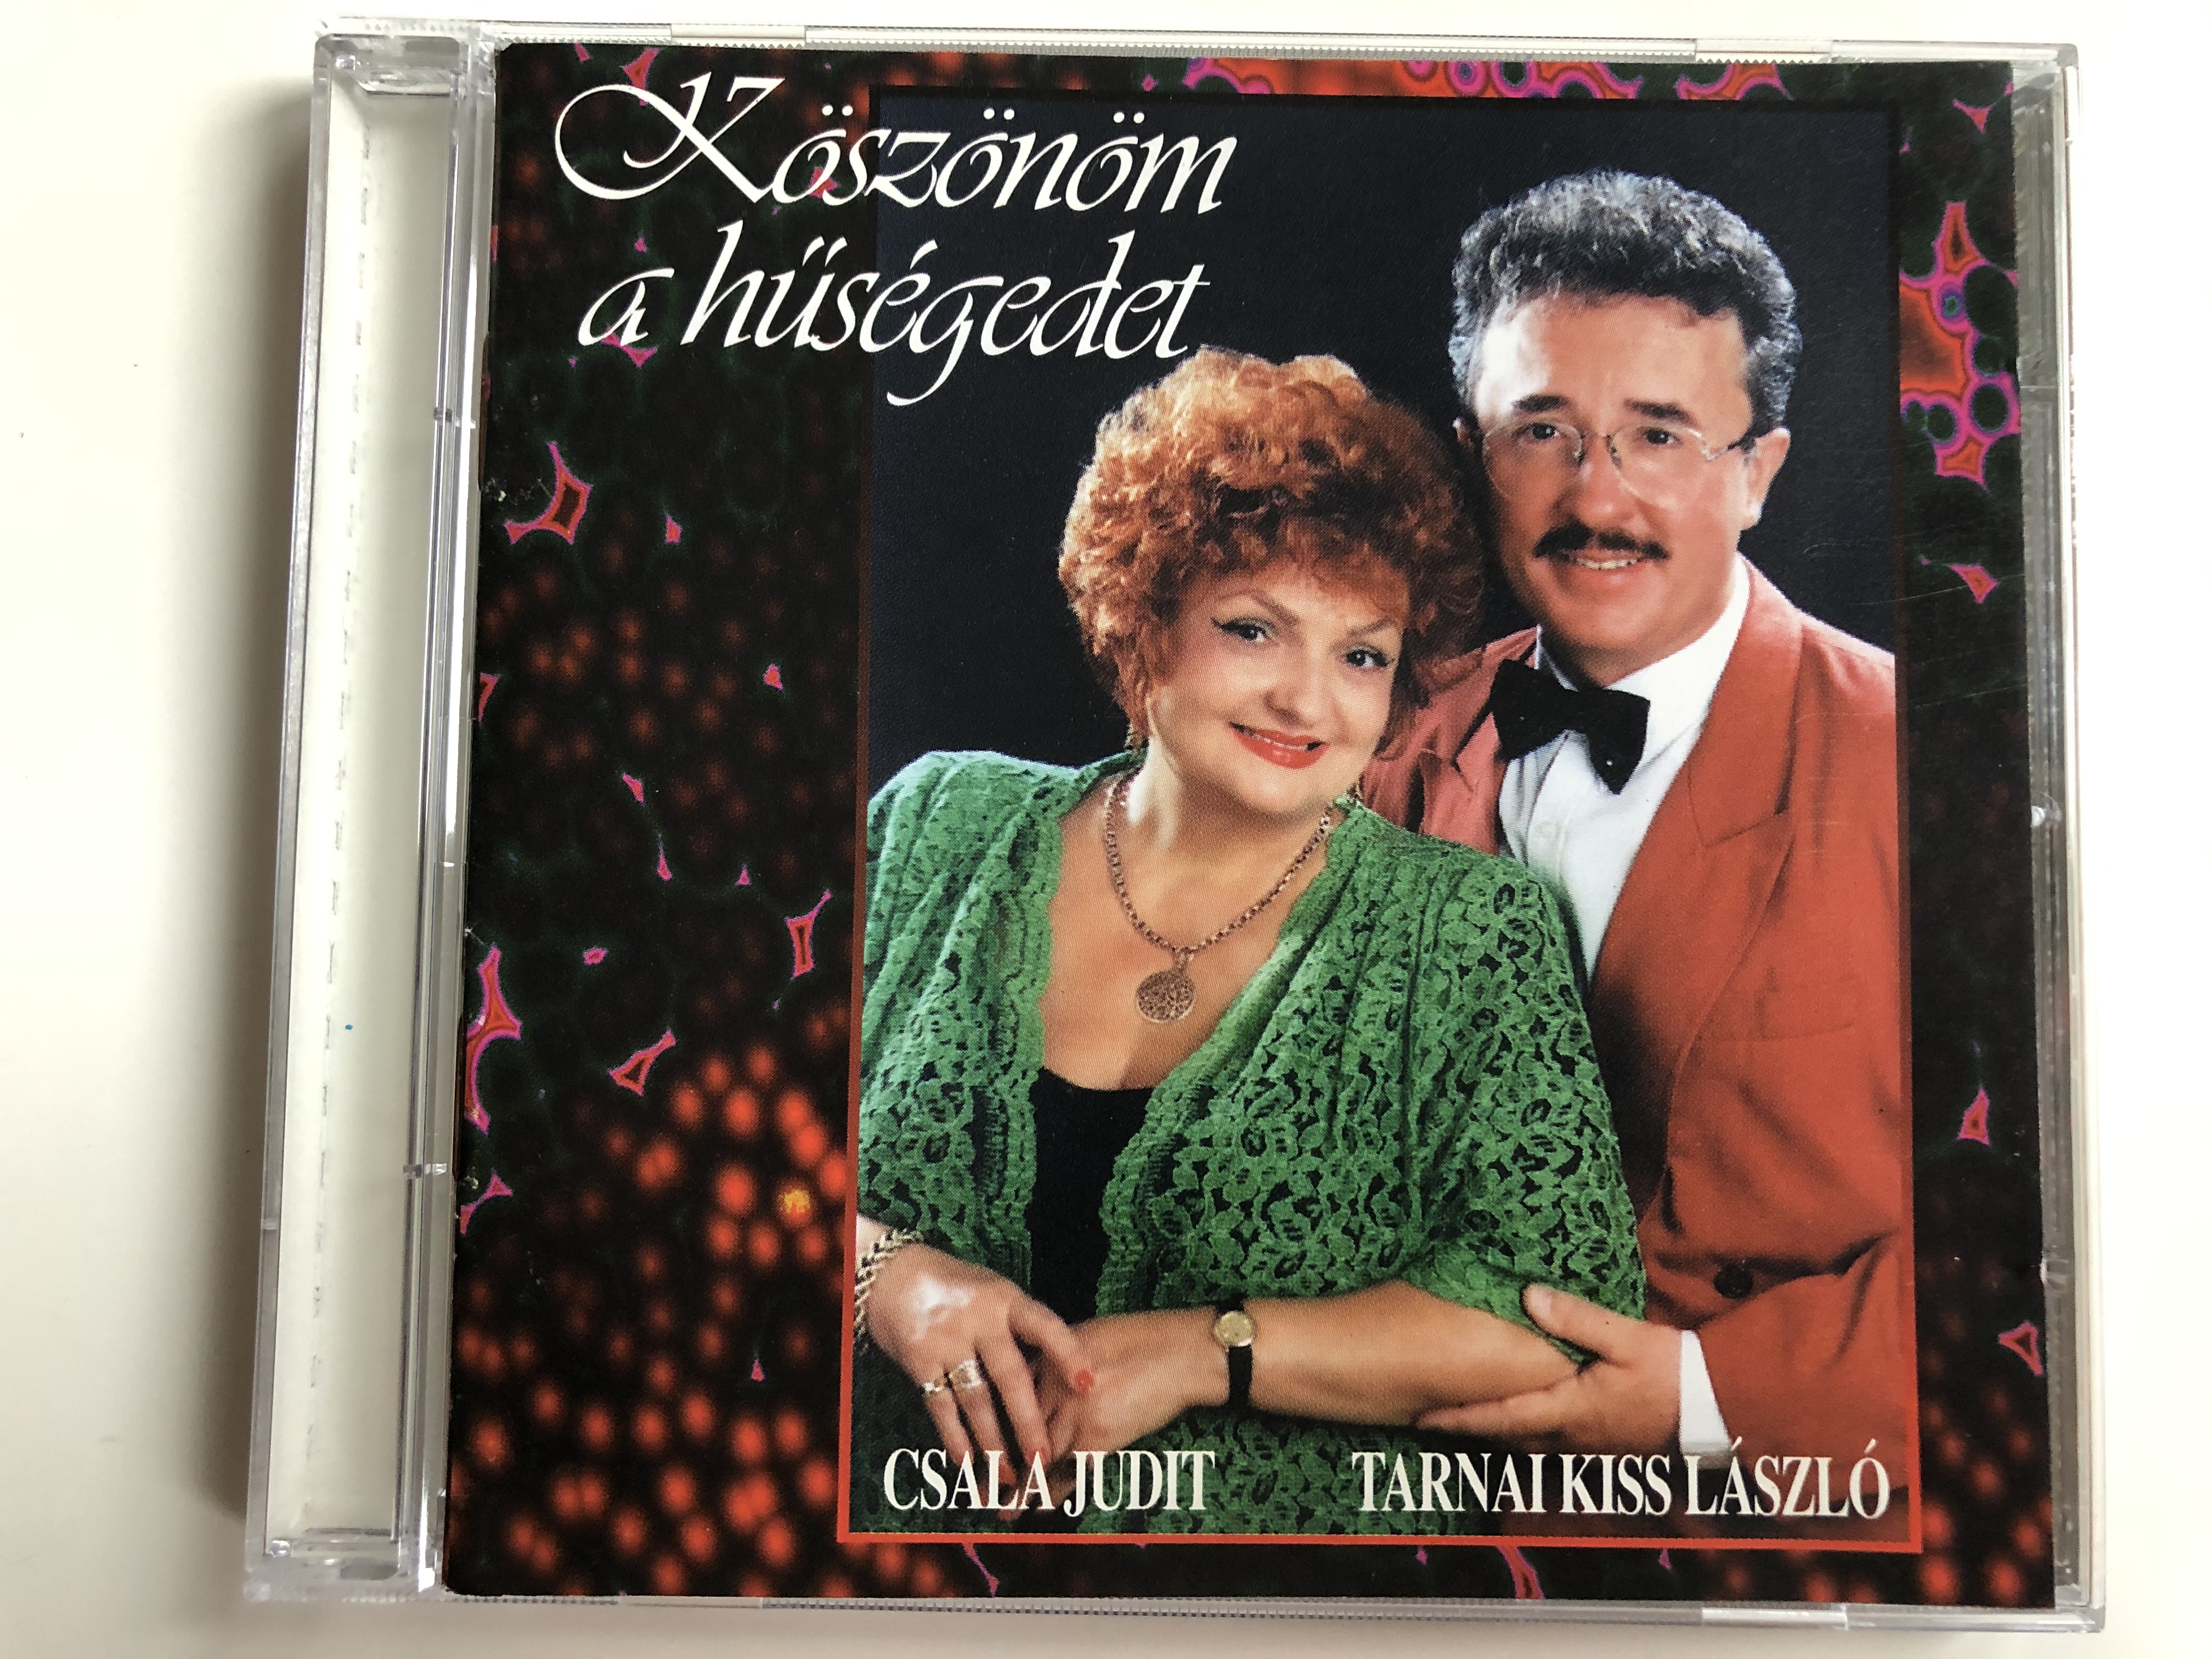 k-sz-n-m-a-h-s-gedet-csala-judit-tarnai-kiss-l-szl-appleton-ltd.-audio-cd-1998-stereo-bcc-18-1-.jpg